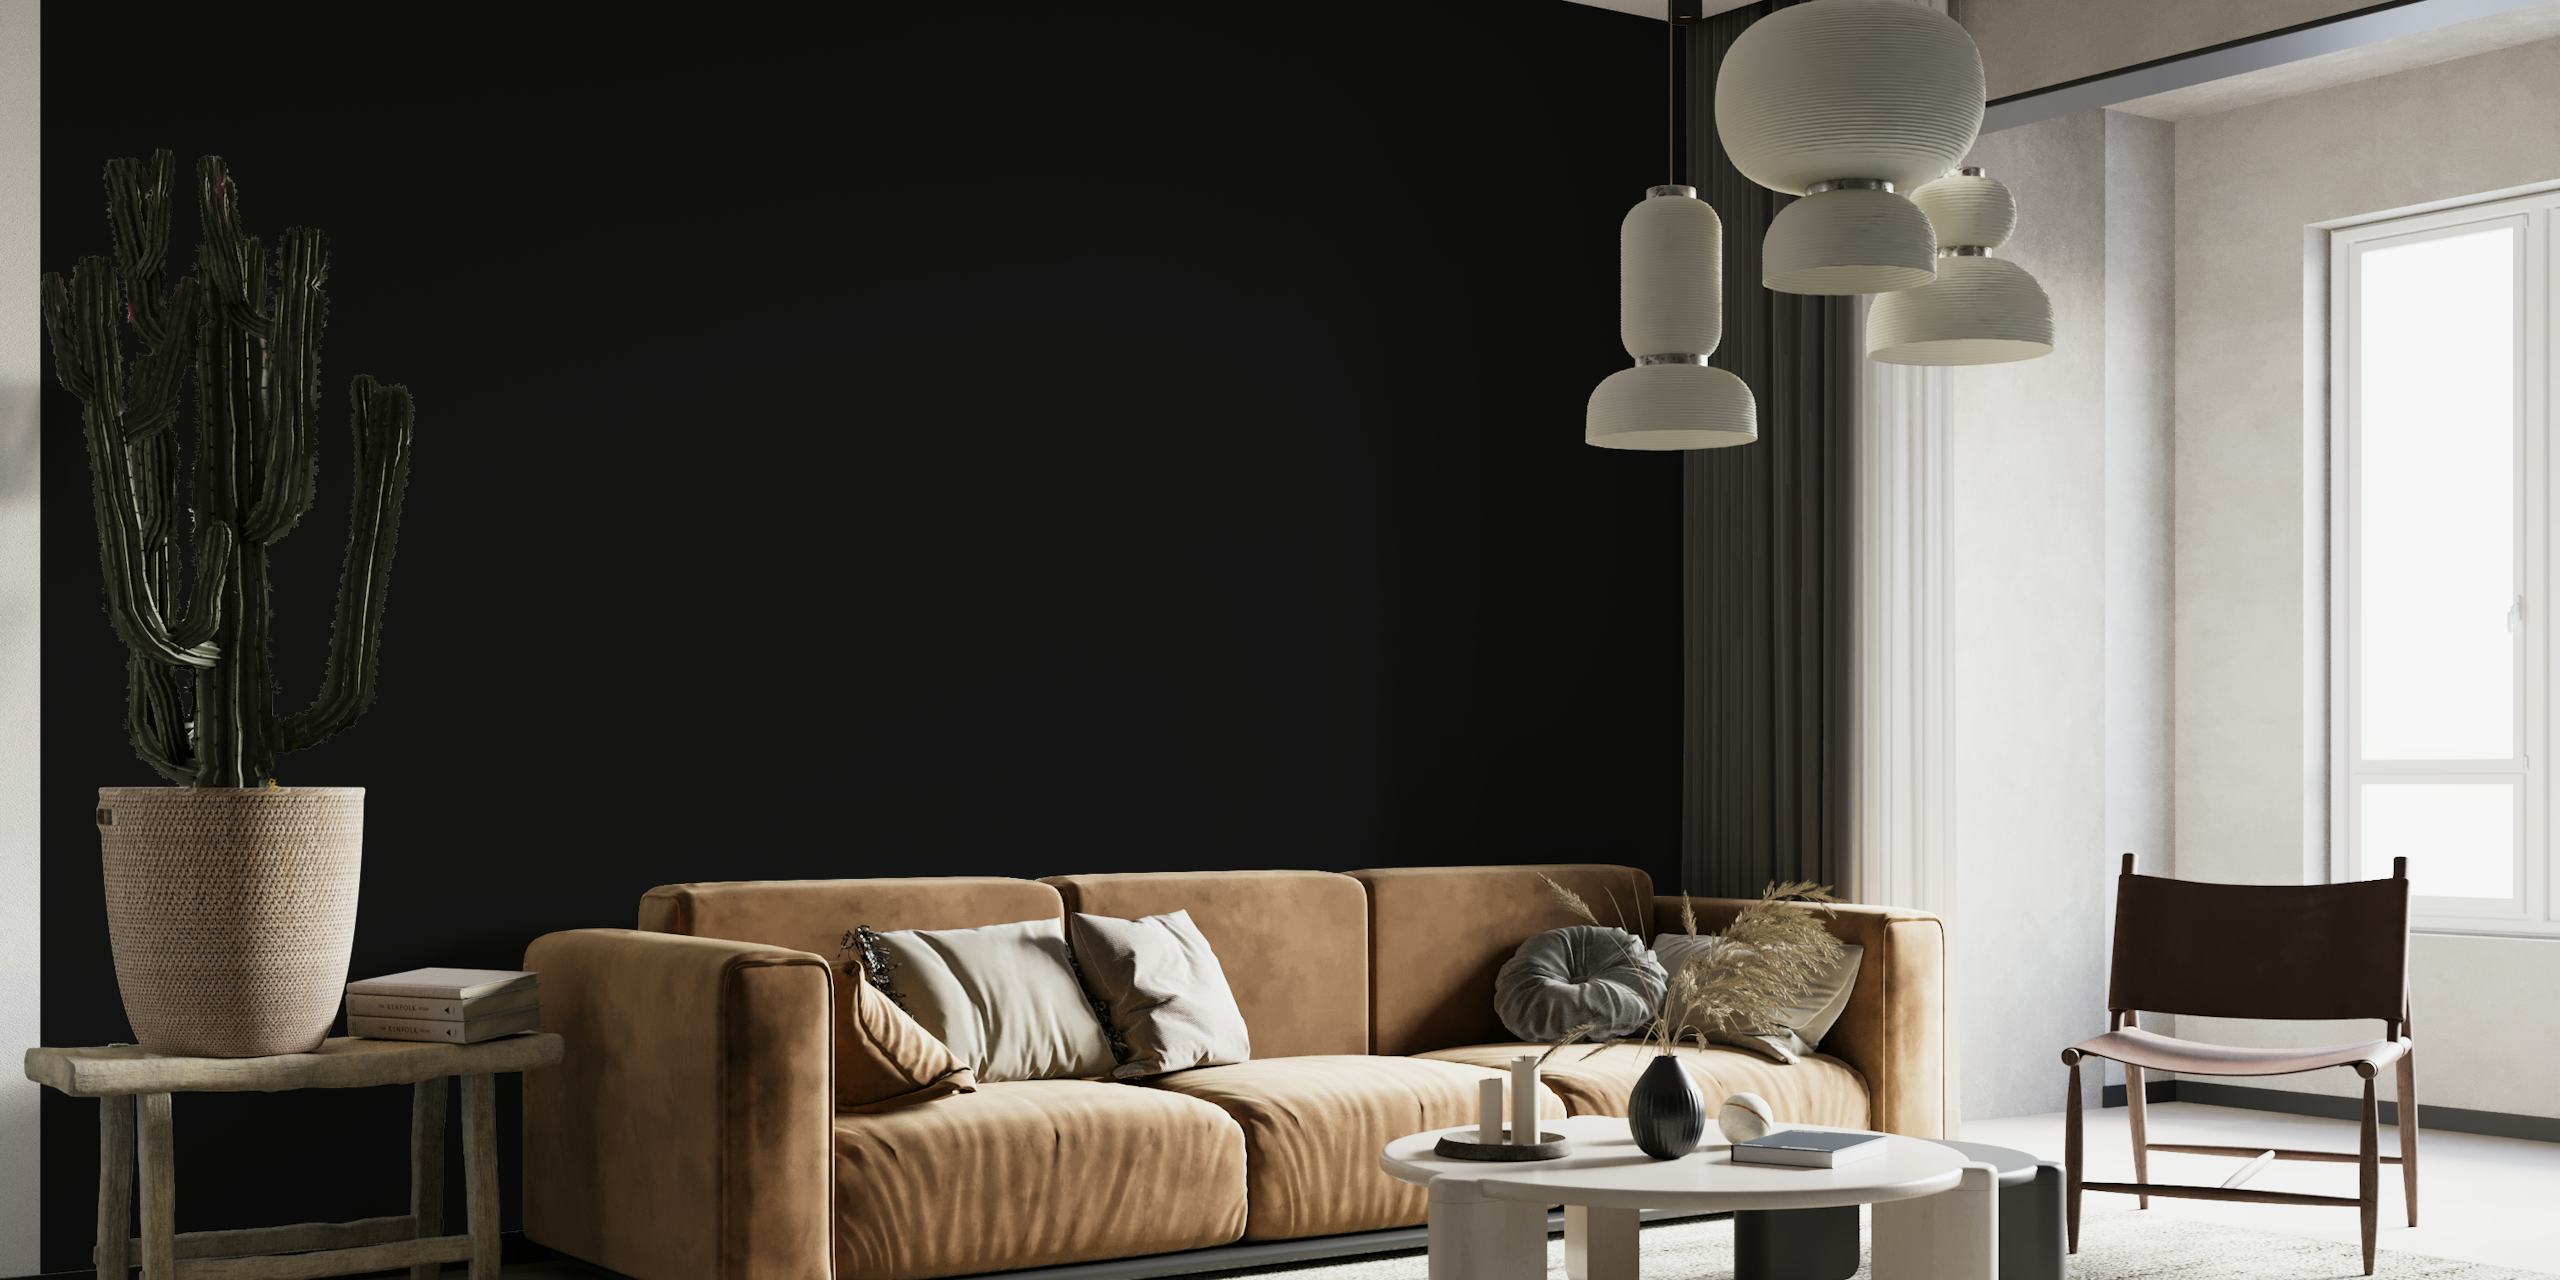 Elegant Perfect Black fotobehang met diepzwarte tinten voor een verfijnd interieur.